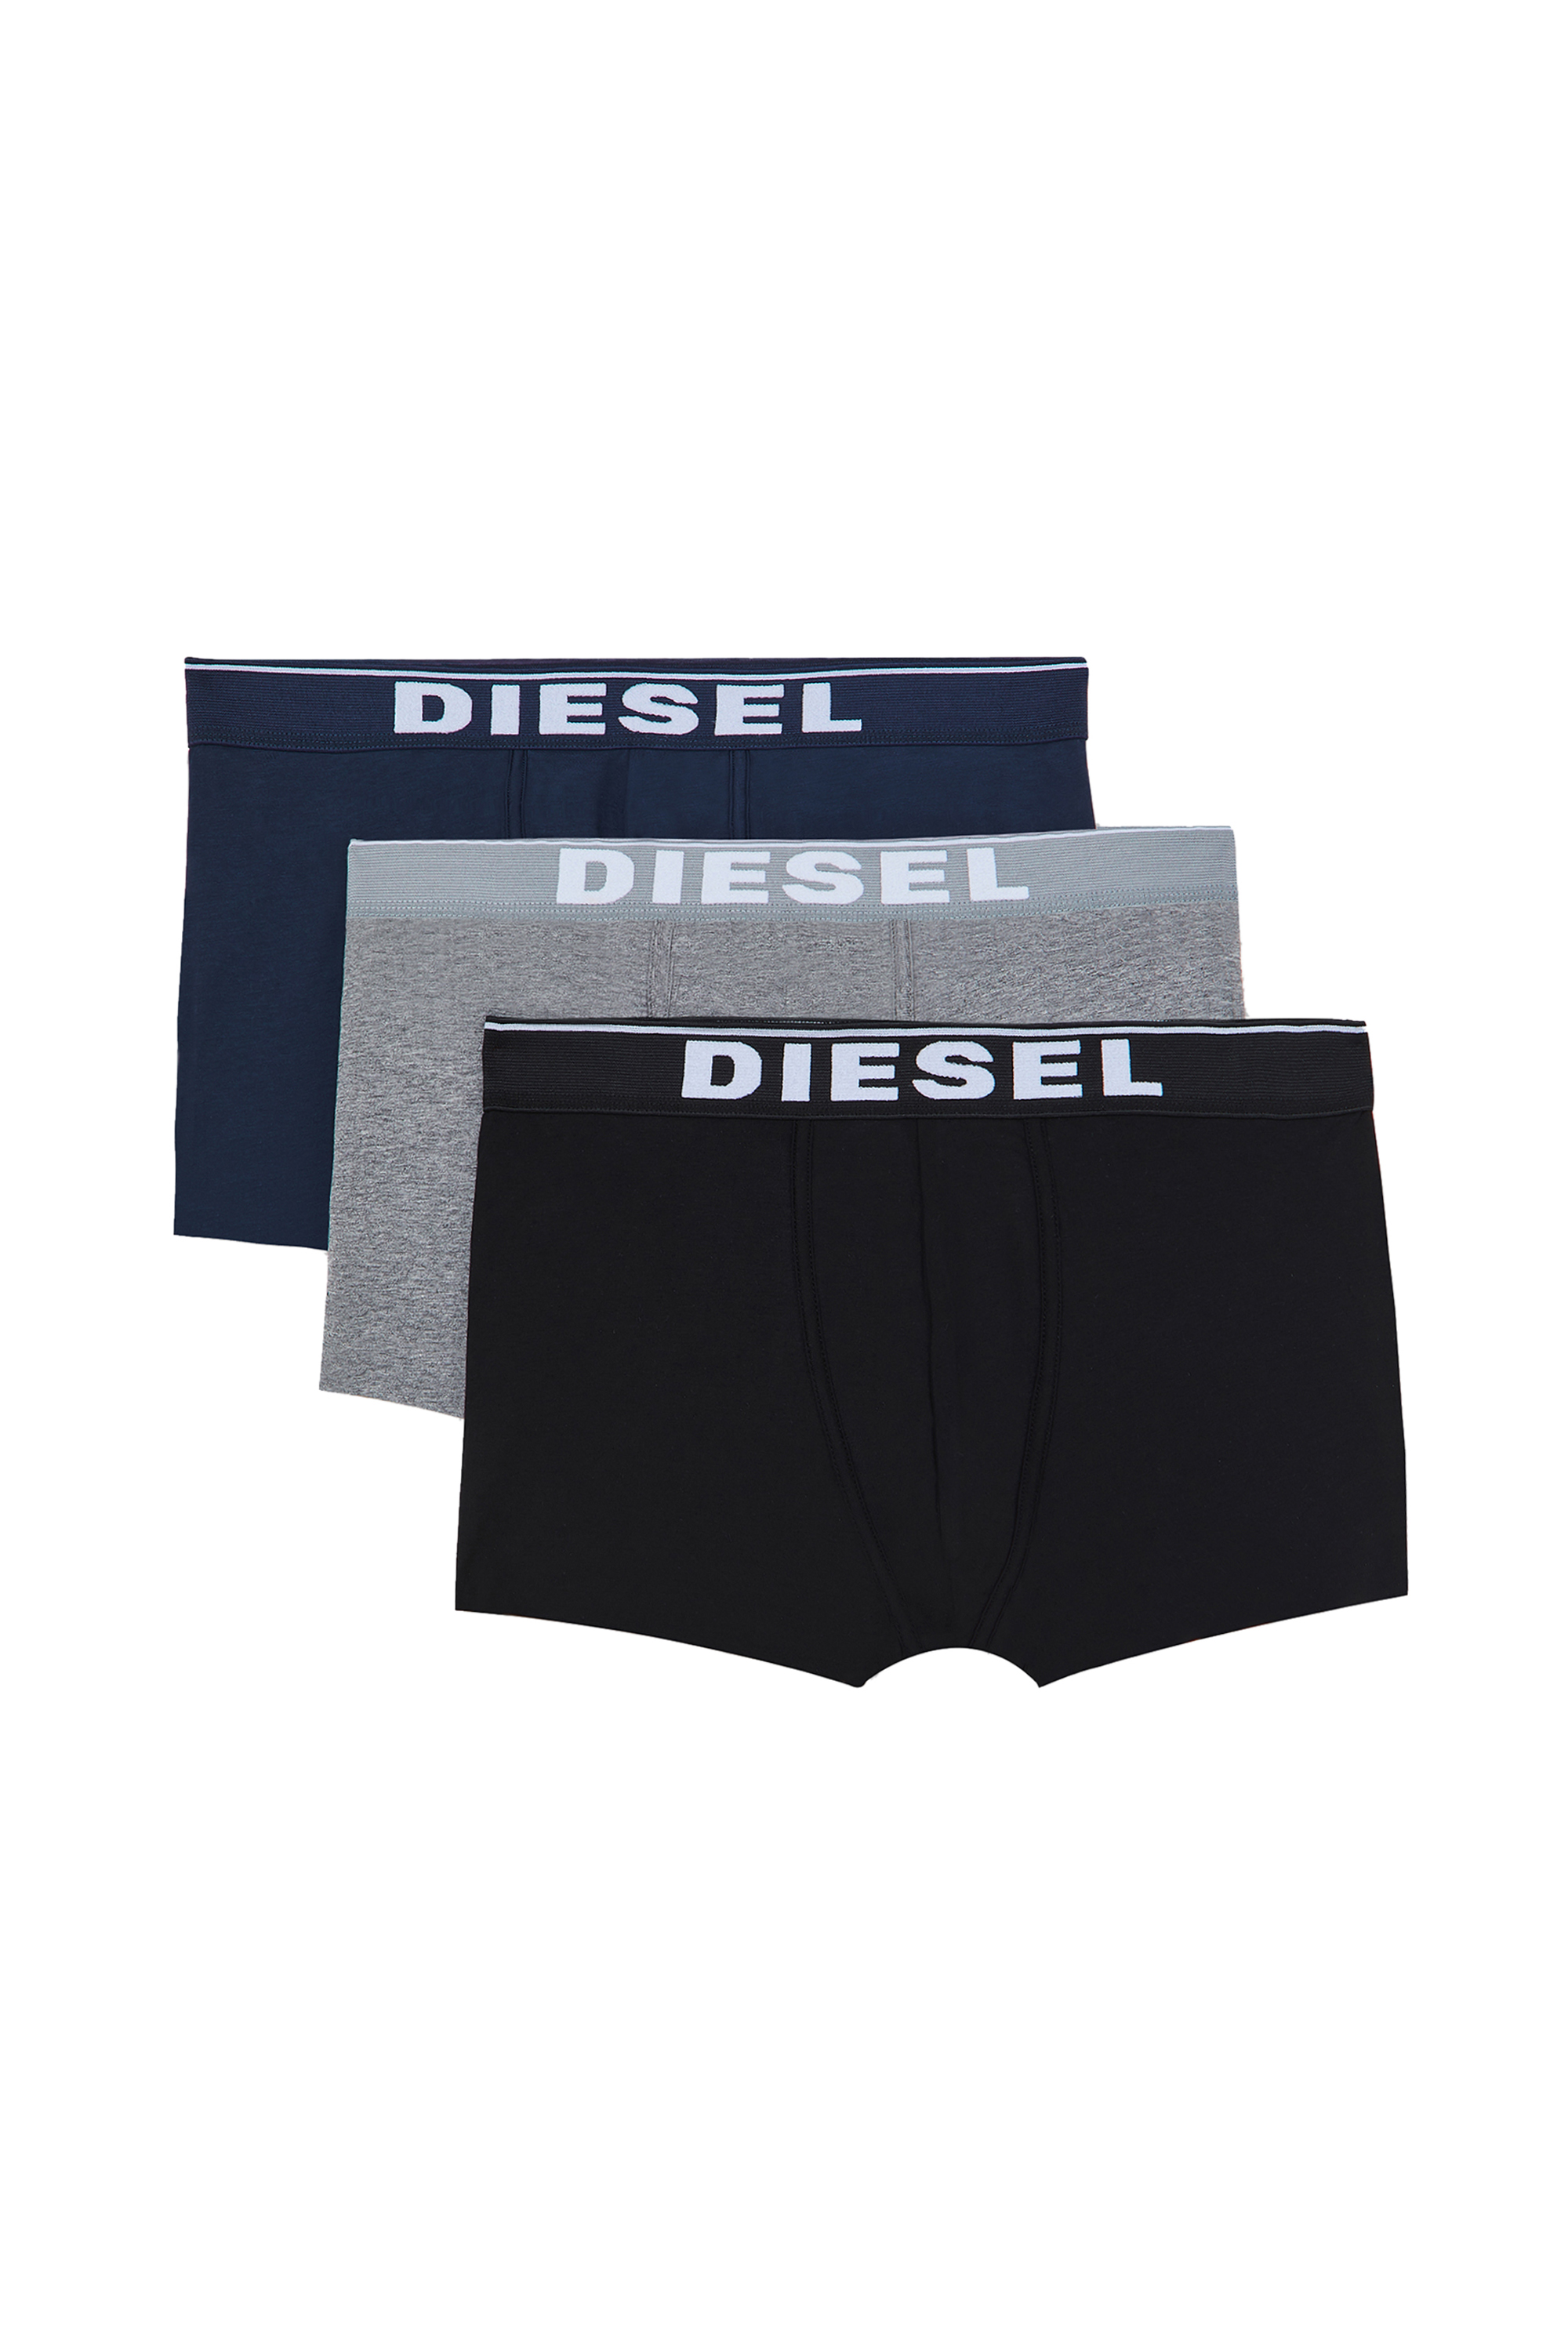 Diesel - UMBX-DAMIENTHREEPACK, Multicolor/Black - Image 3